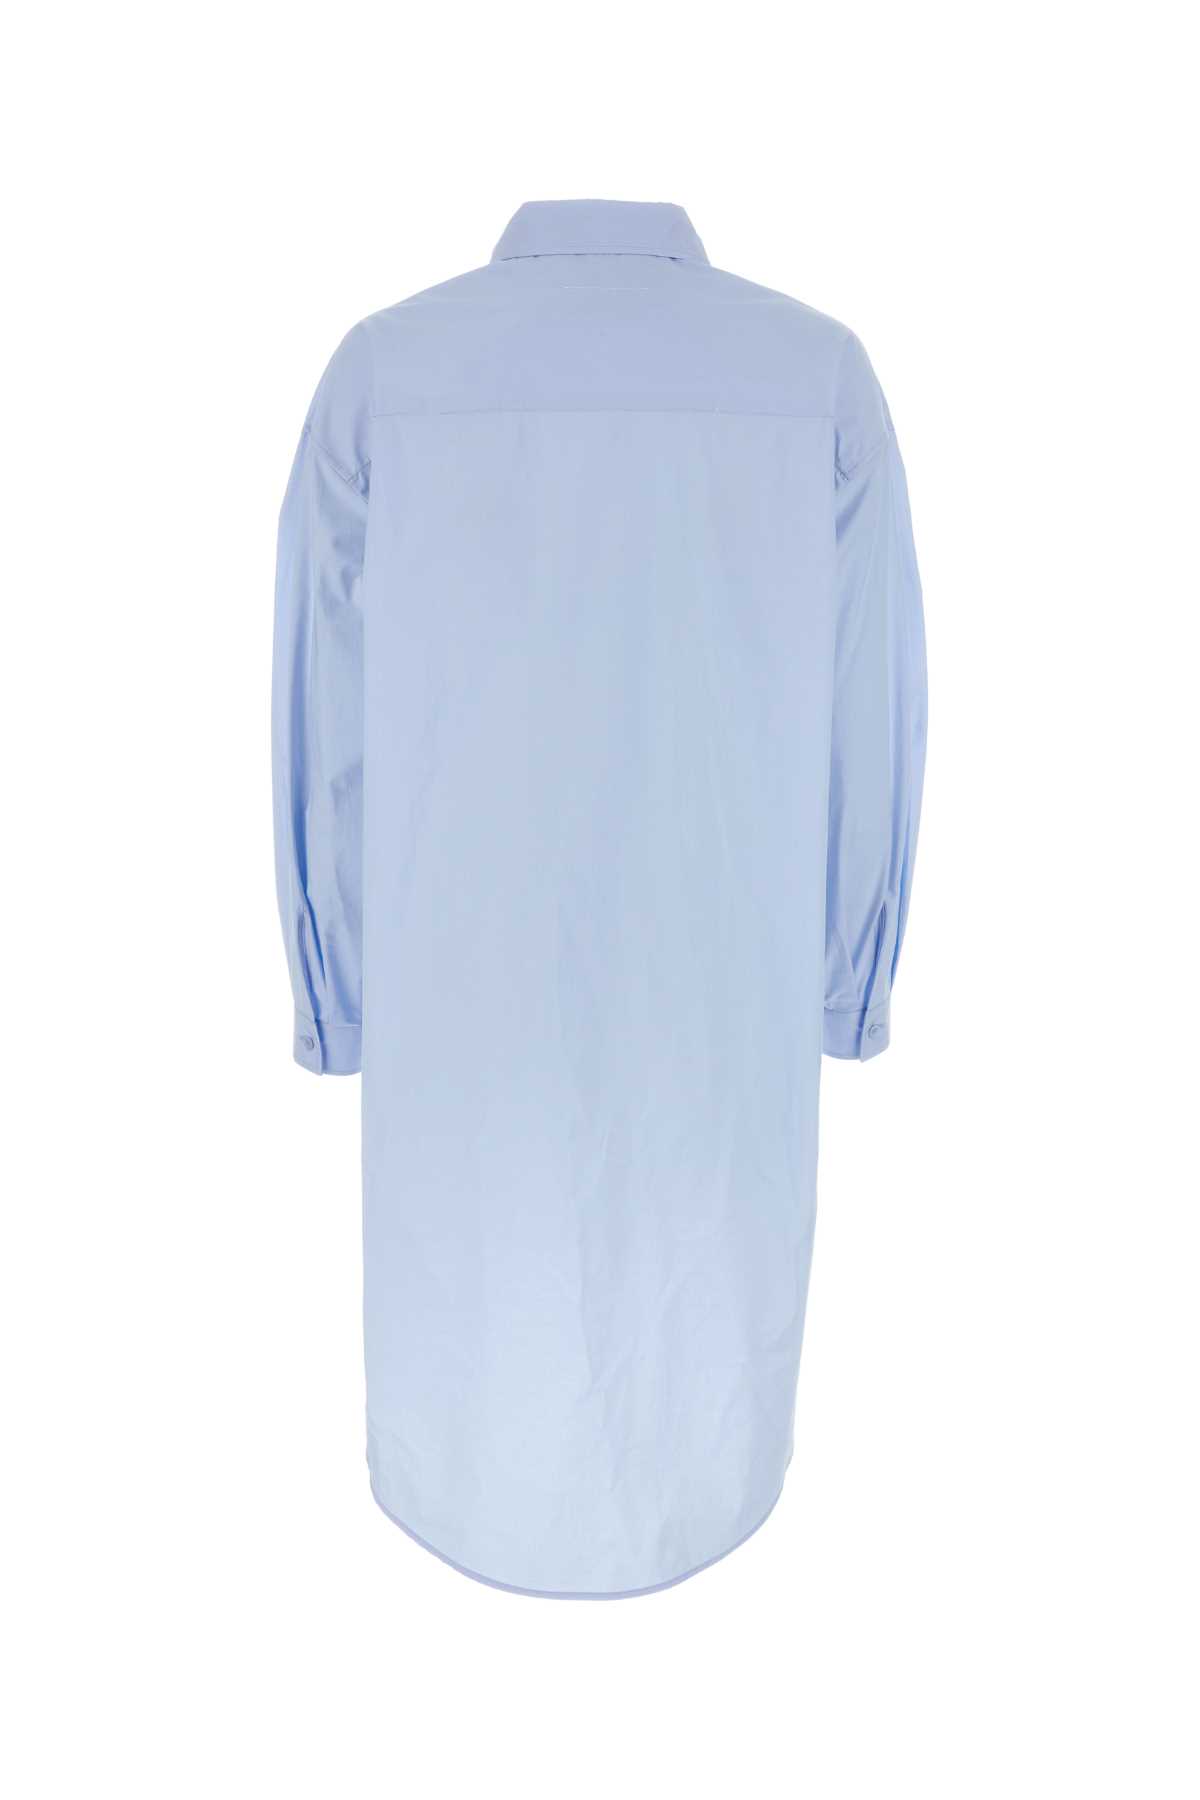 Mm6 Maison Margiela Light Blue Poplin Shirt Dress In Lightblue